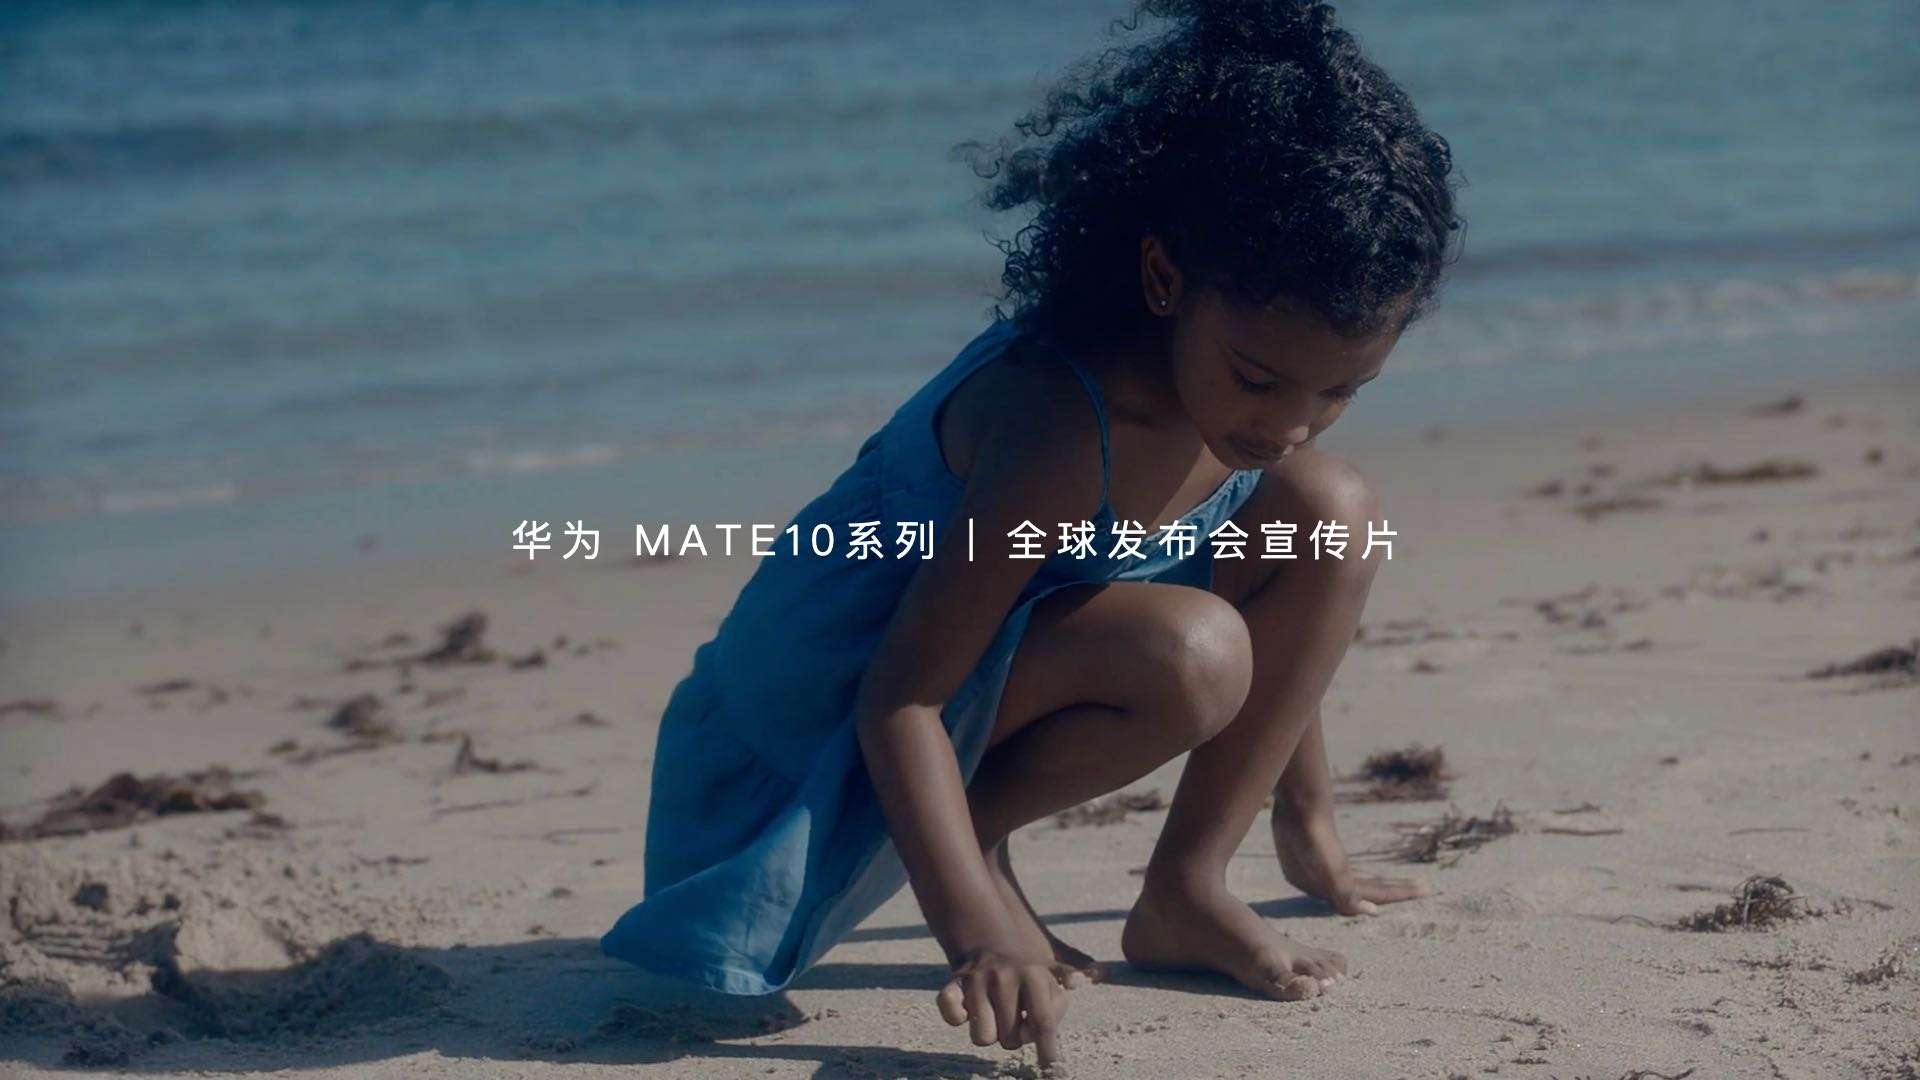 华为 MATE10系列 | 全球发布会宣传片